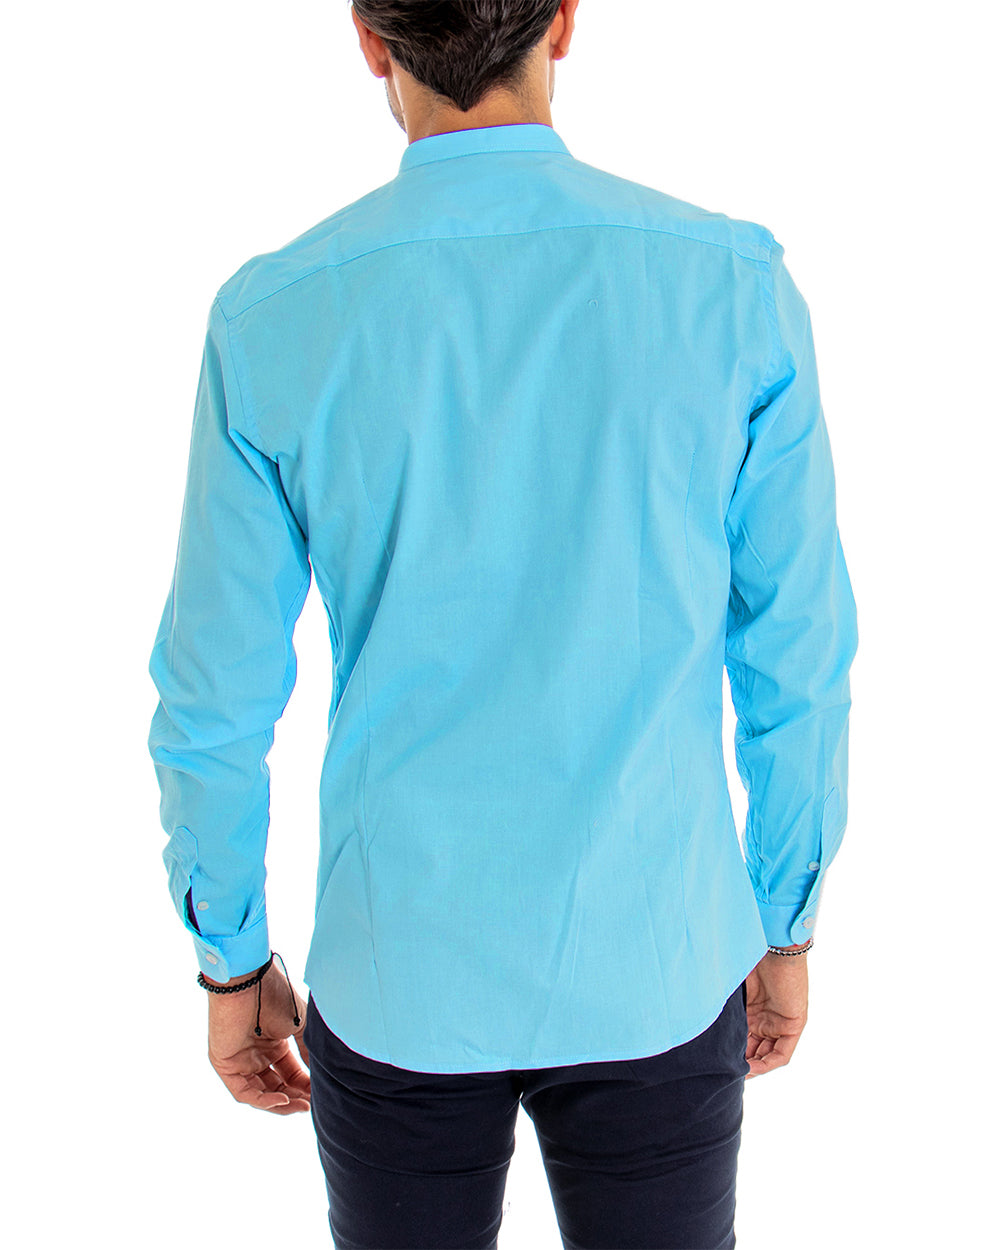 Camicia Uomo Collo Coreano Manica Lunga Tinta Unita Slim Fit Basic Turchese GIOSAL-C2100A